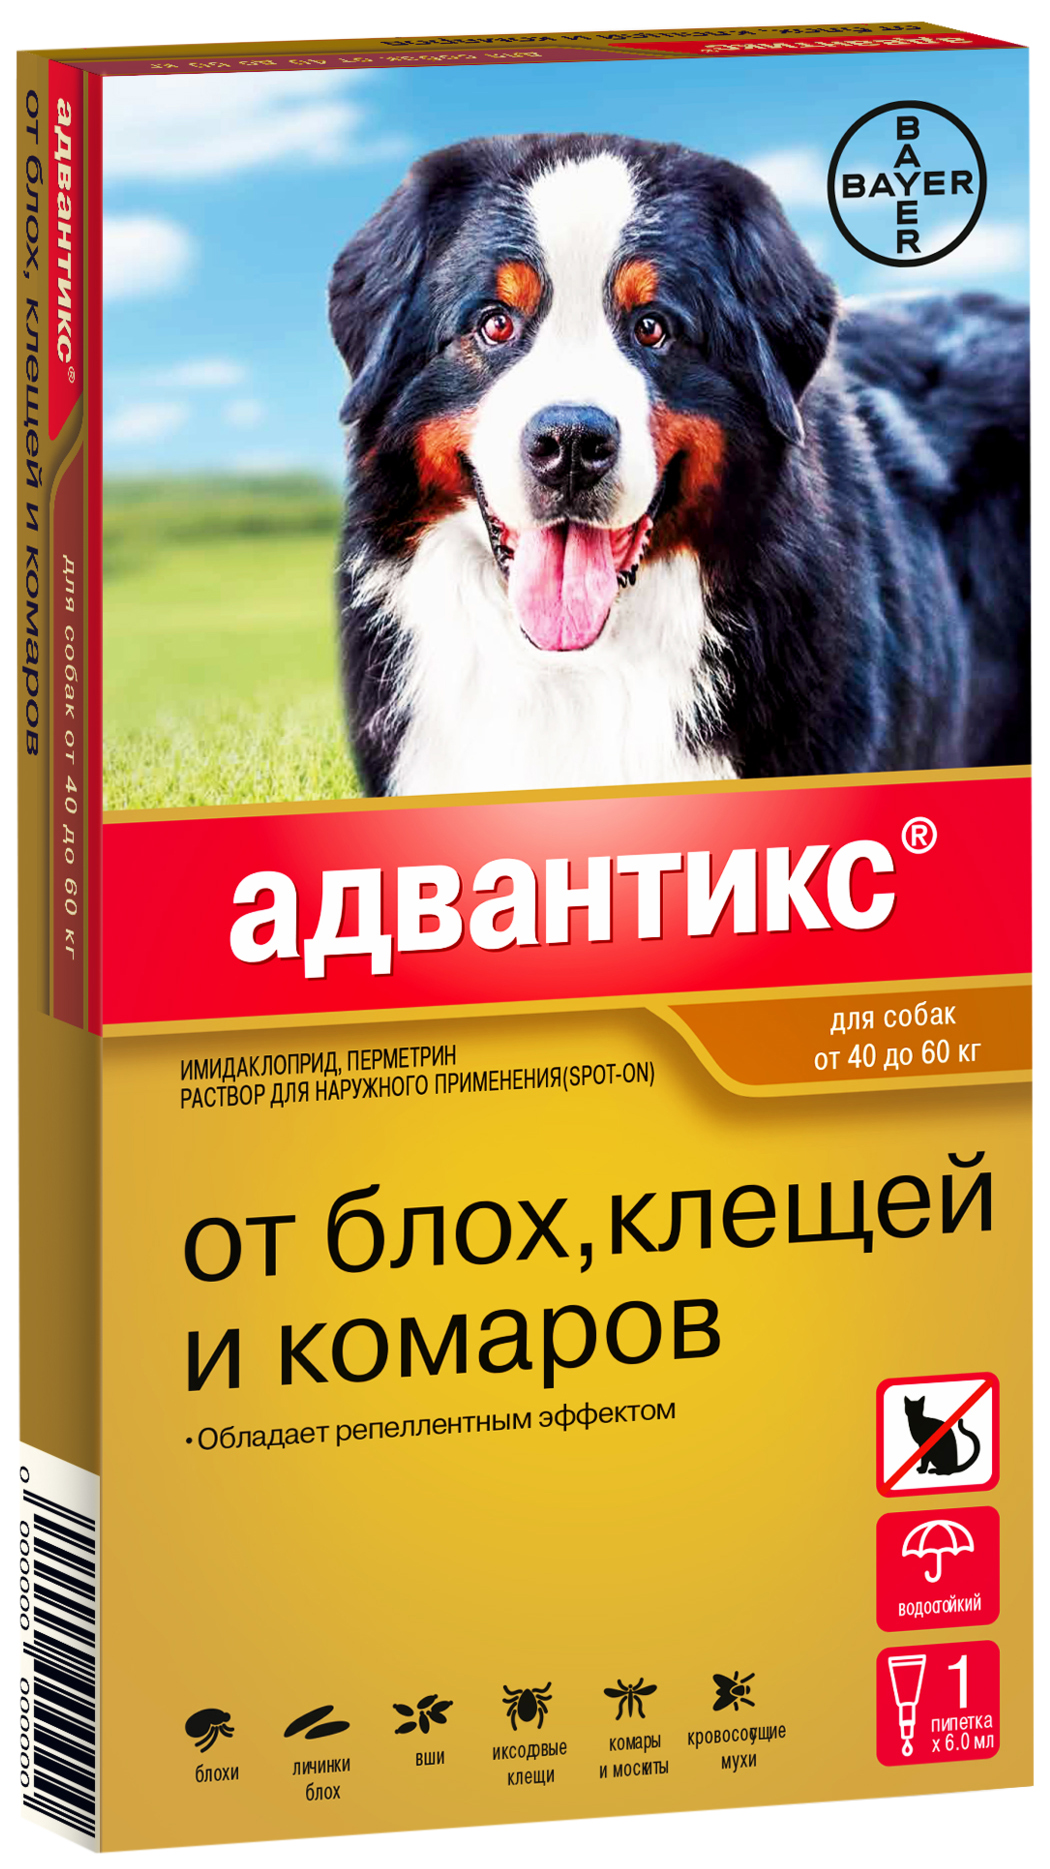 Капли для собак от блох клещей и комаров Bayer Адвантикс, массой 40-60 кг, 6 мл